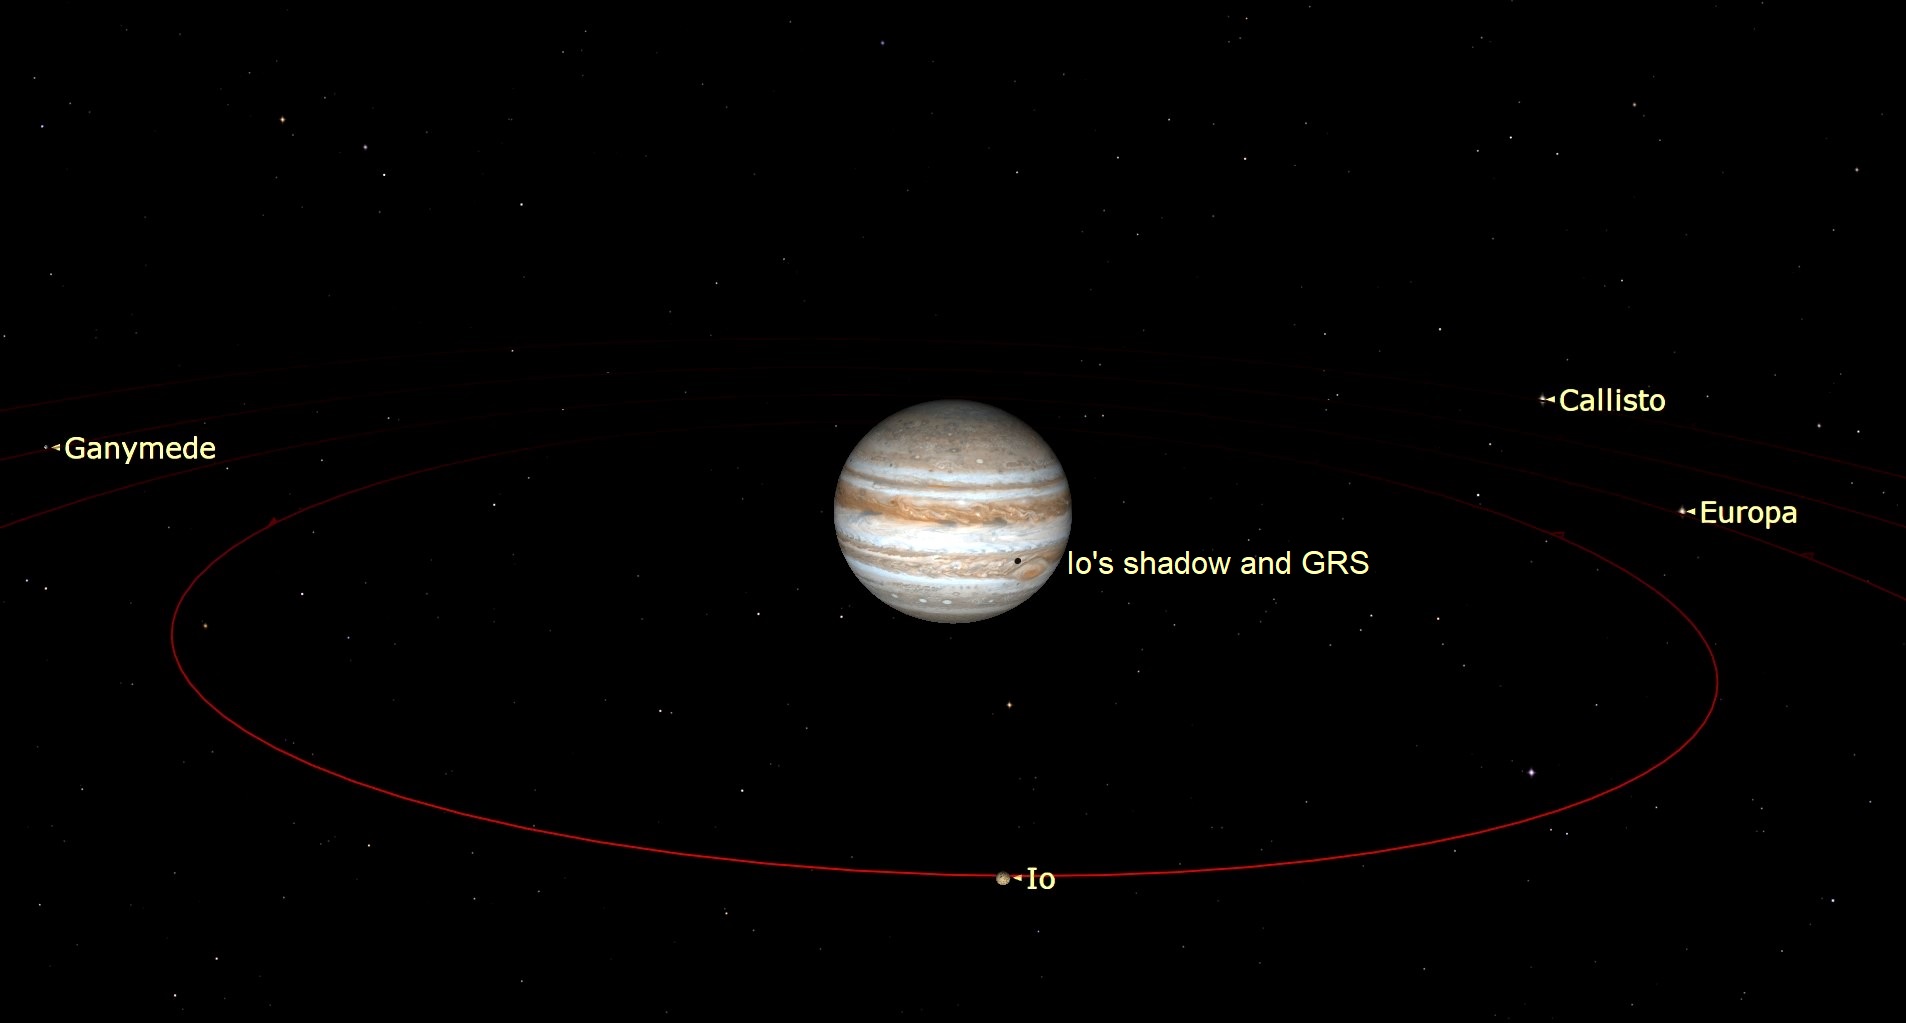 Afbeelding met Jupiter in het midden van de afbeelding met Callisto, Europa, Io en Ganymedes in een baan rond de gasreus.  Er is een kleine zwarte vlek zichtbaar op het oppervlak van Jupiter, het is de schaduw van Io.